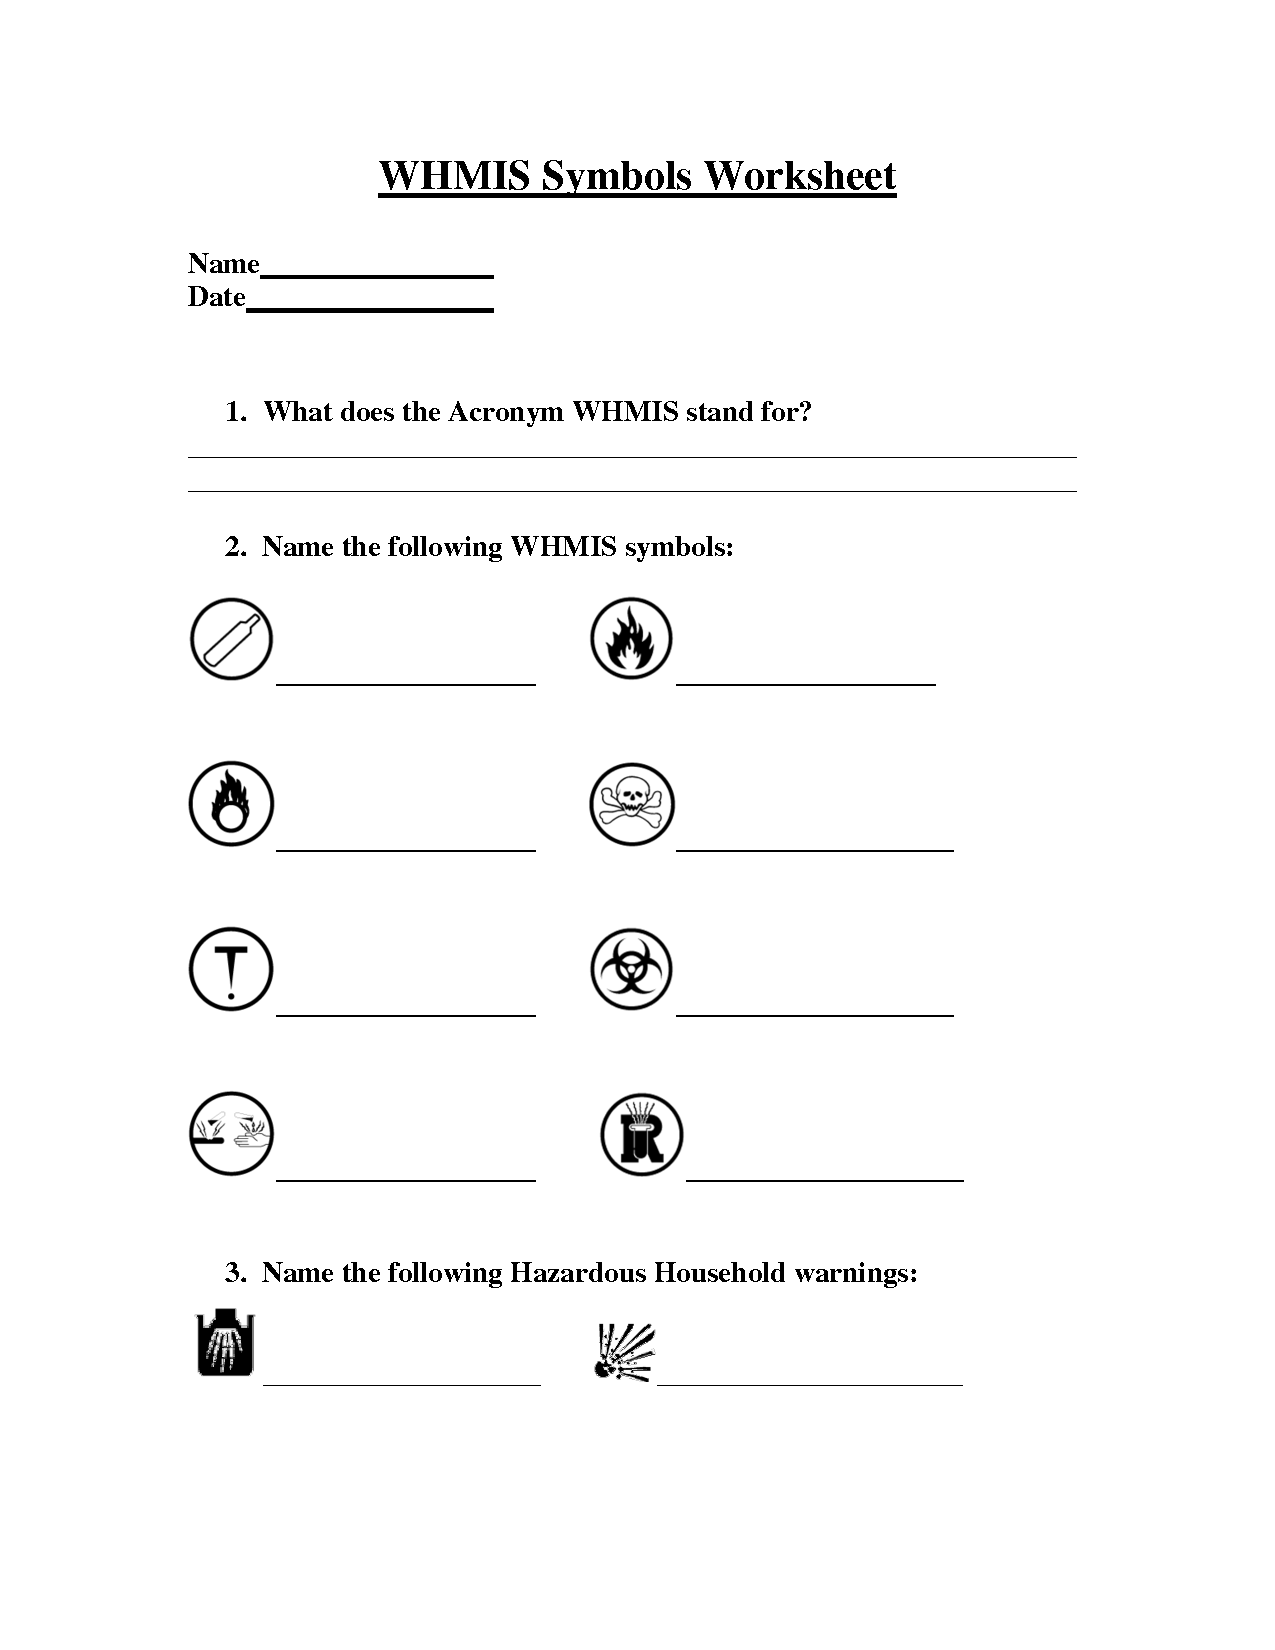 Science Safety Symbols Worksheet Image